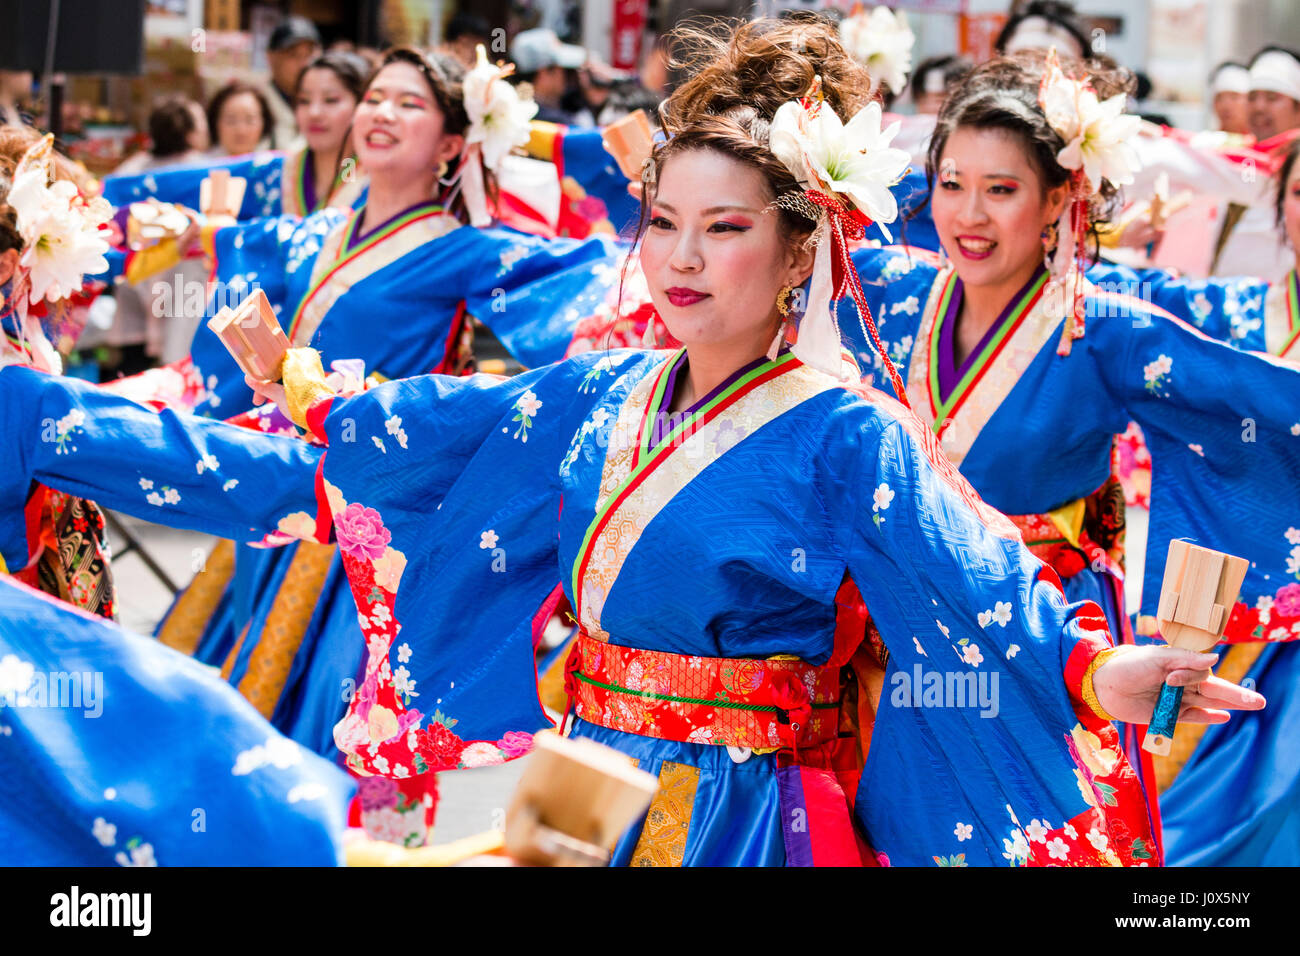 Hinokuni Yosakoi Dance Festival. Frauen Mannschaft in Blau und Rot yukata, Bildung tanzen und mit naruko, hölzerne Klöppel, in der Shopping Mall. Stockfoto